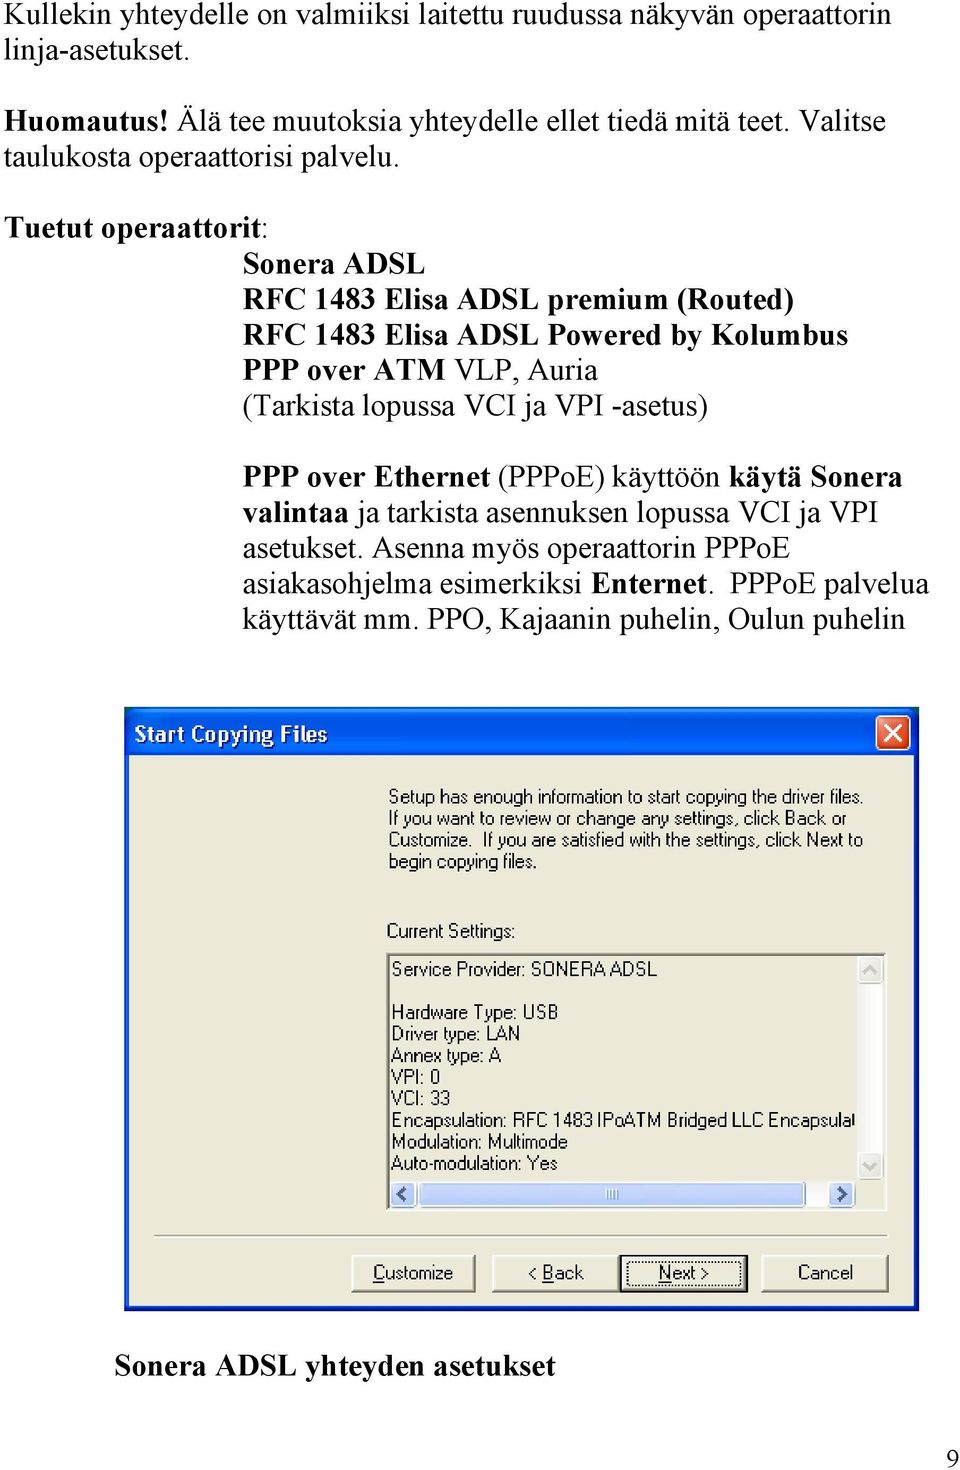 Tuetut operaattorit: Sonera ADSL RFC 1483 Elisa ADSL premium (Routed) RFC 1483 Elisa ADSL Powered by Kolumbus PPP over ATM VLP, Auria (Tarkista lopussa VCI ja